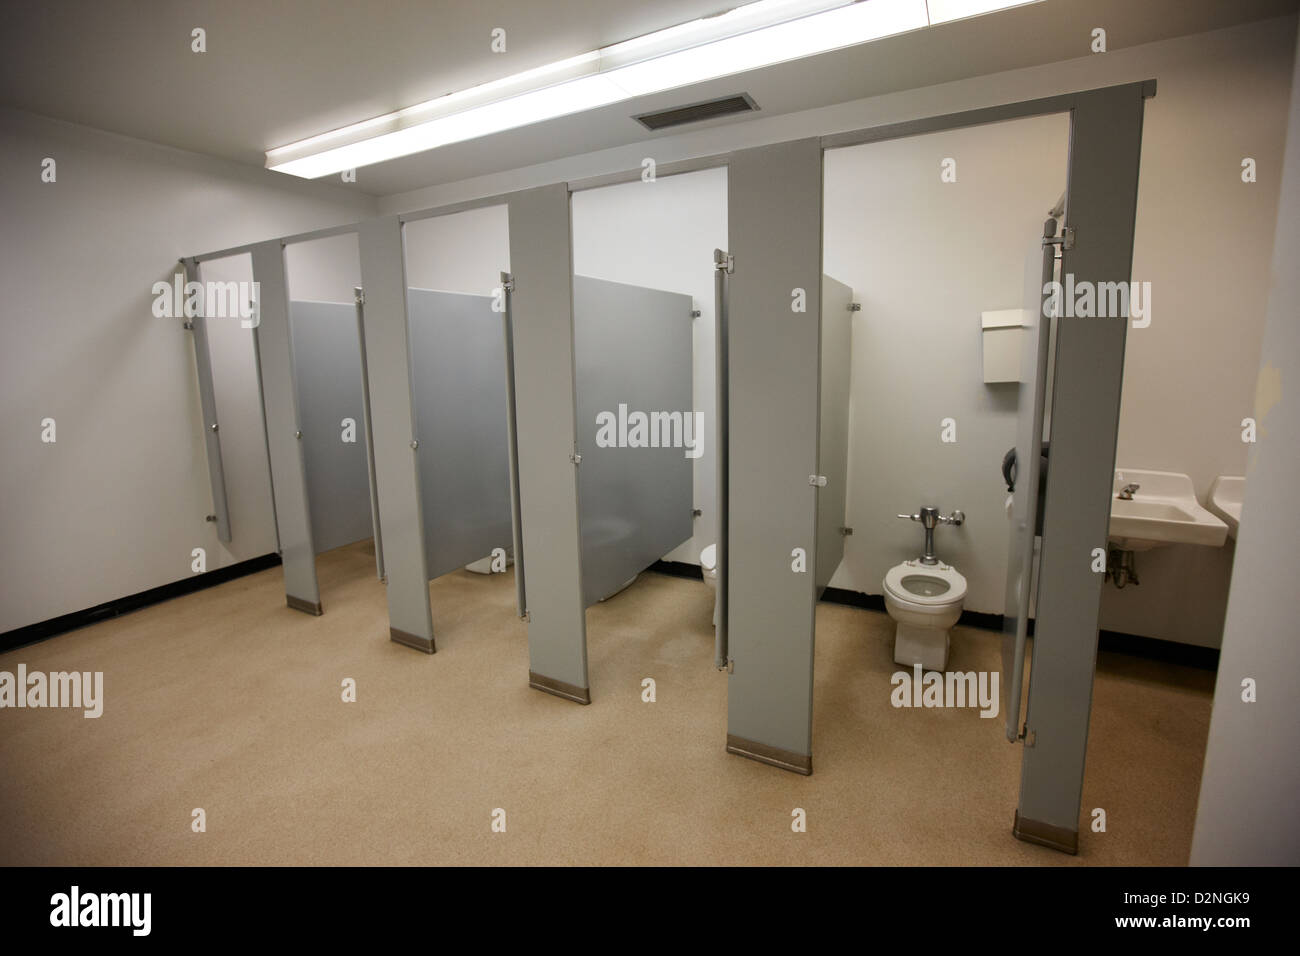 Baños escolares fotografías e imágenes de alta resolución - Alamy